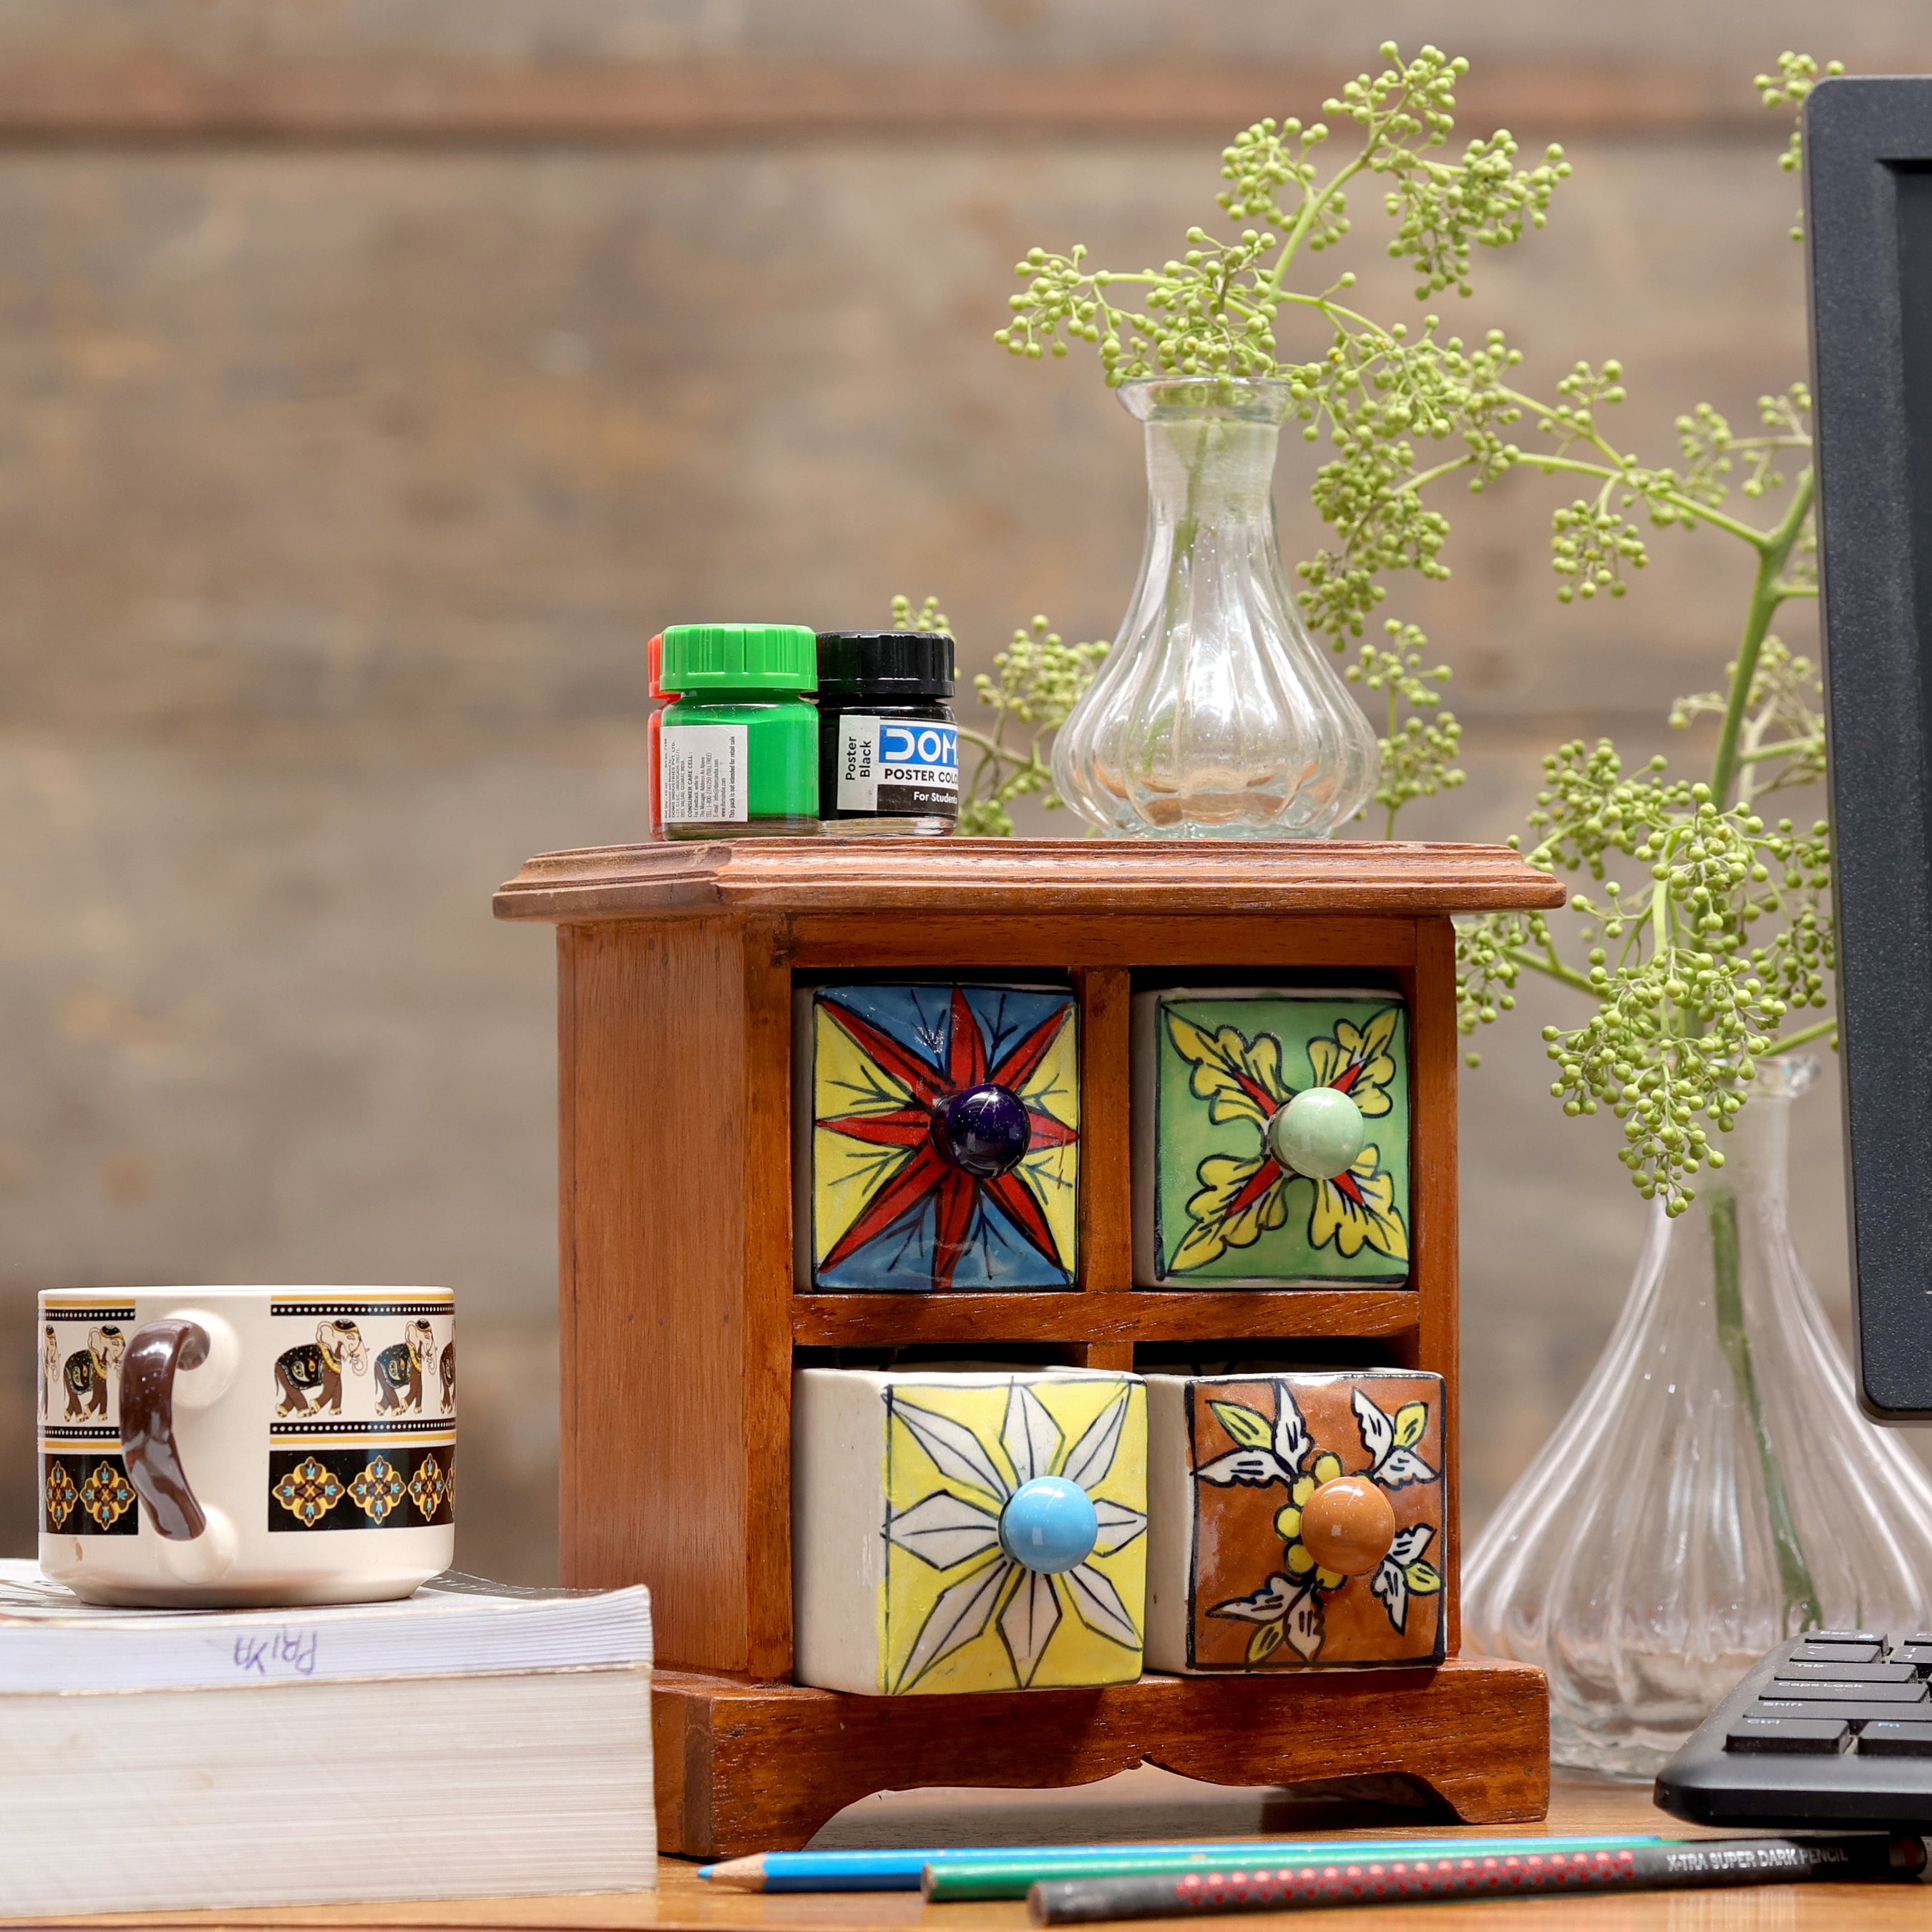 Miniature ceramic Bureau (Natural Color) Desk Organizer